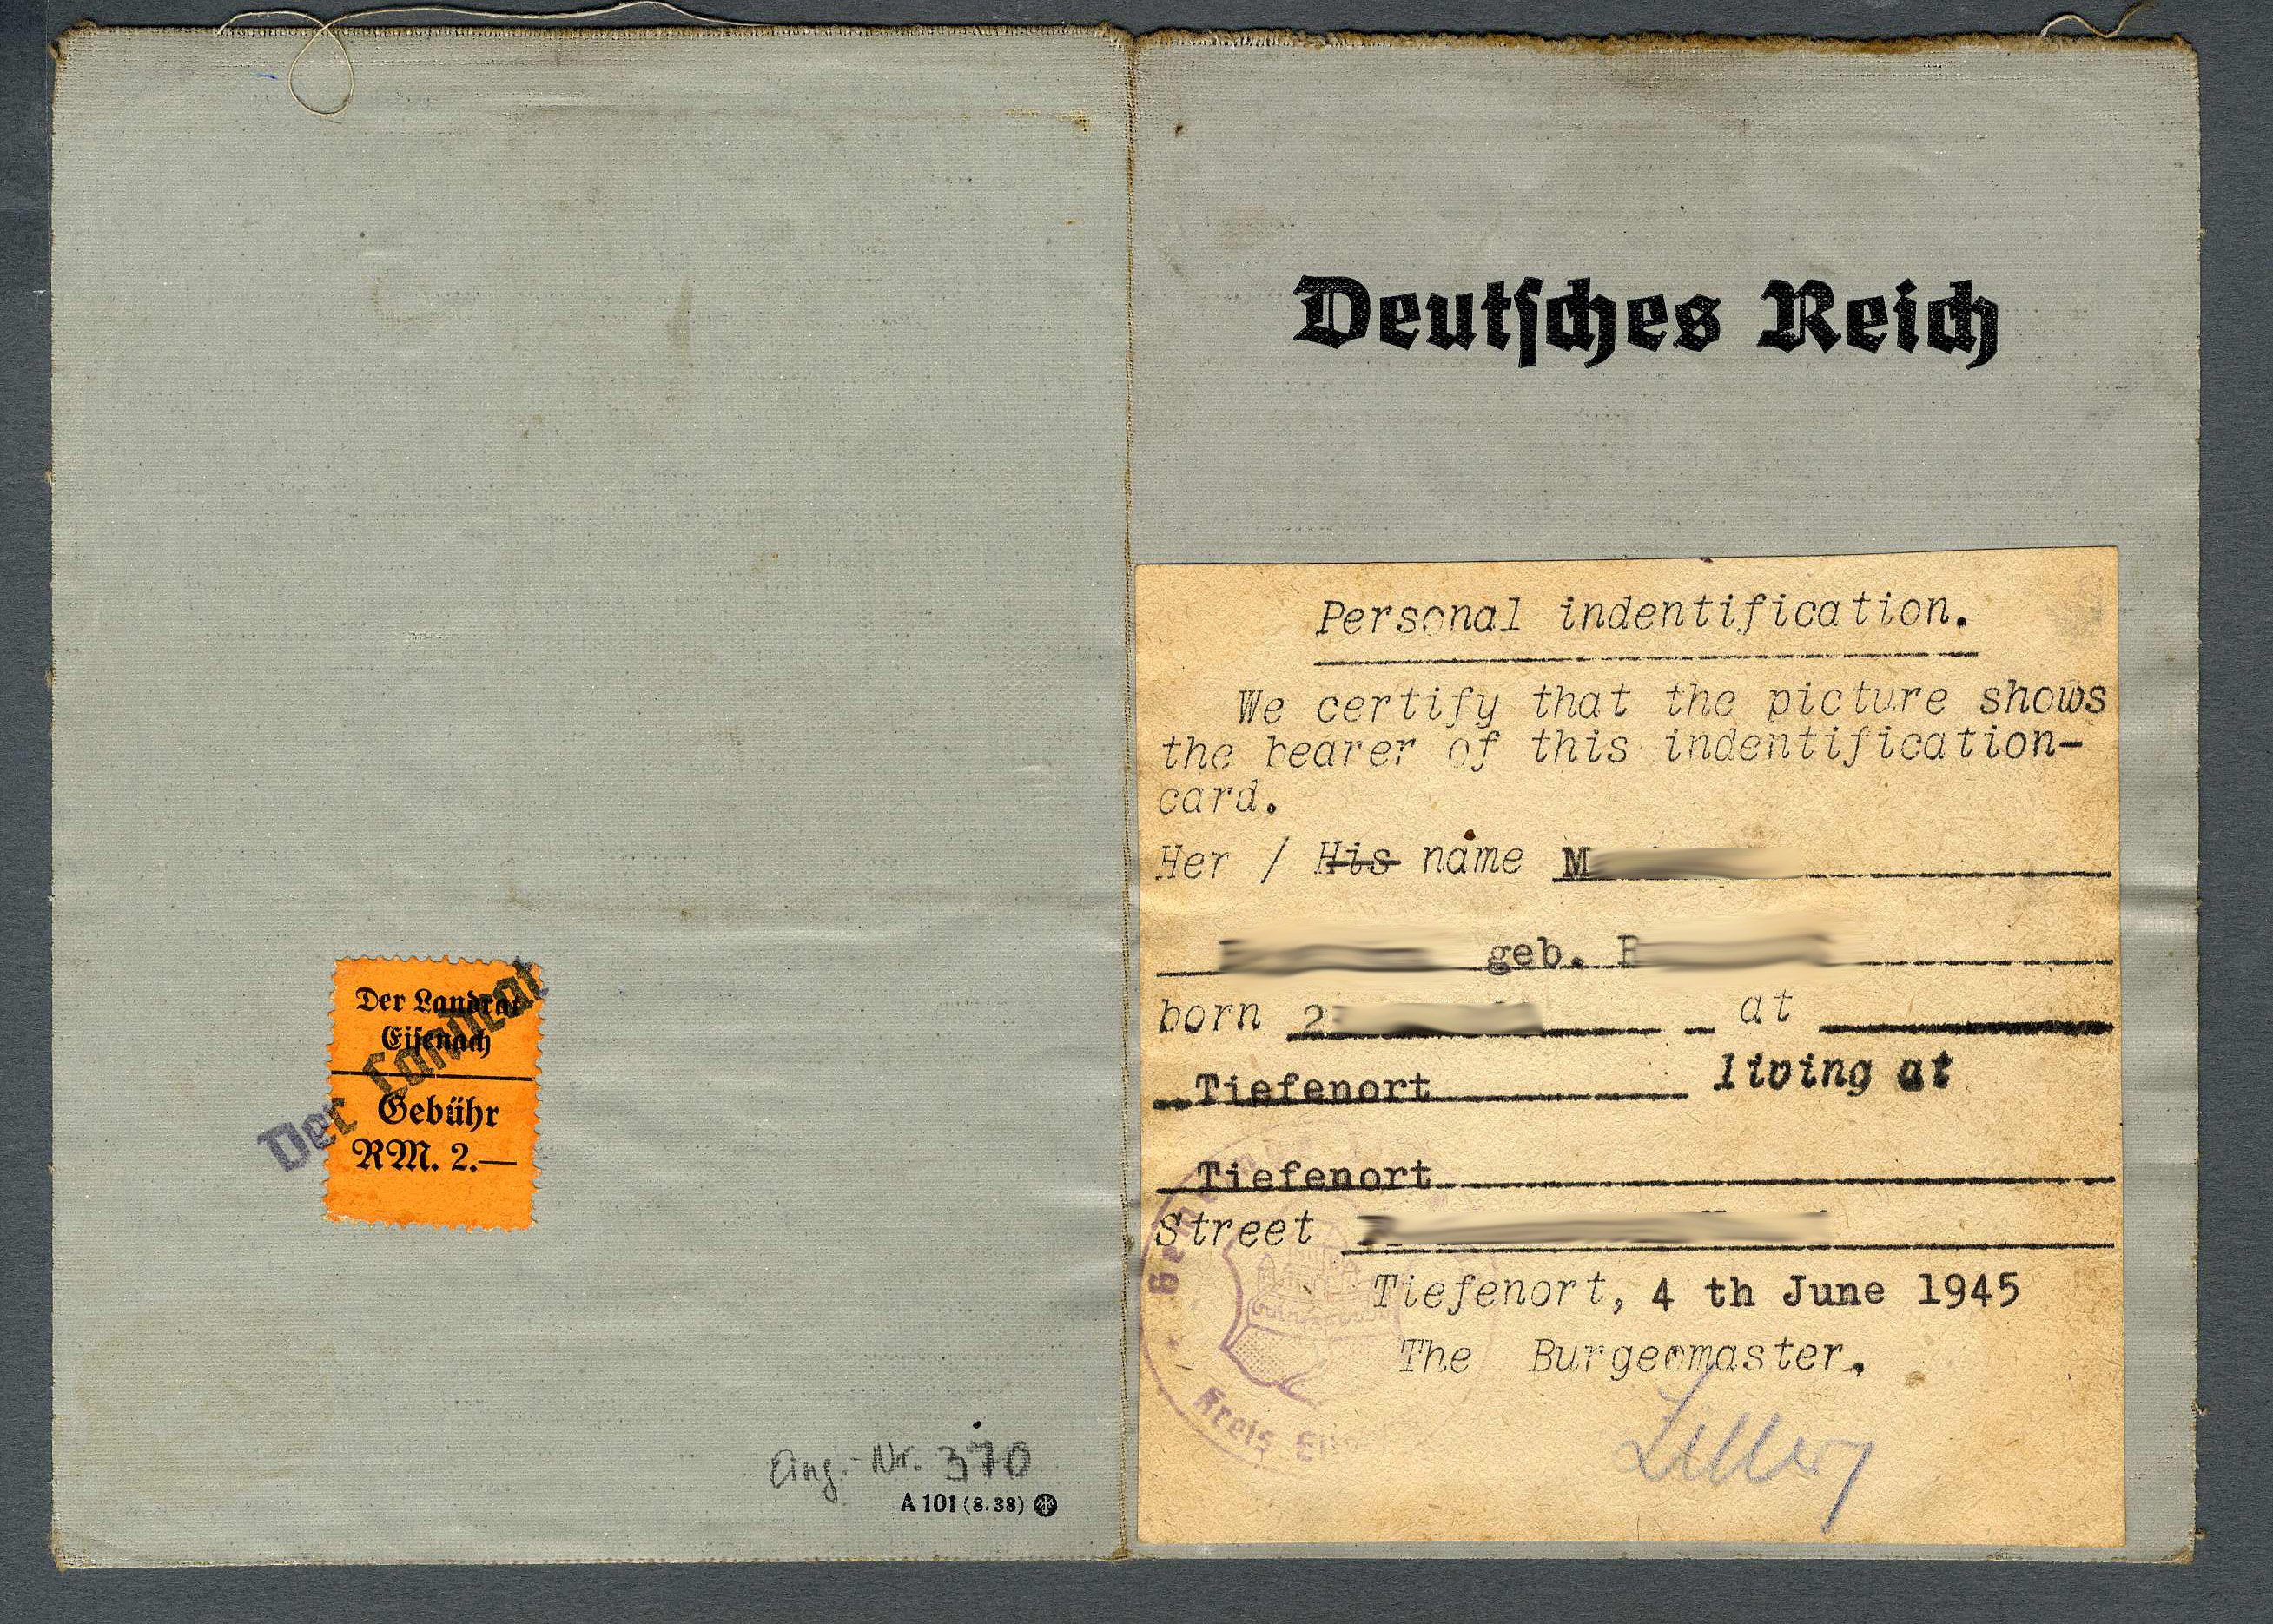 Kennkarte 'Deutsches Reich' mit Aufkleber 'Personal indentification' (Werra-Kalibergbau-Museum, Heringen/W. CC BY-NC-SA)